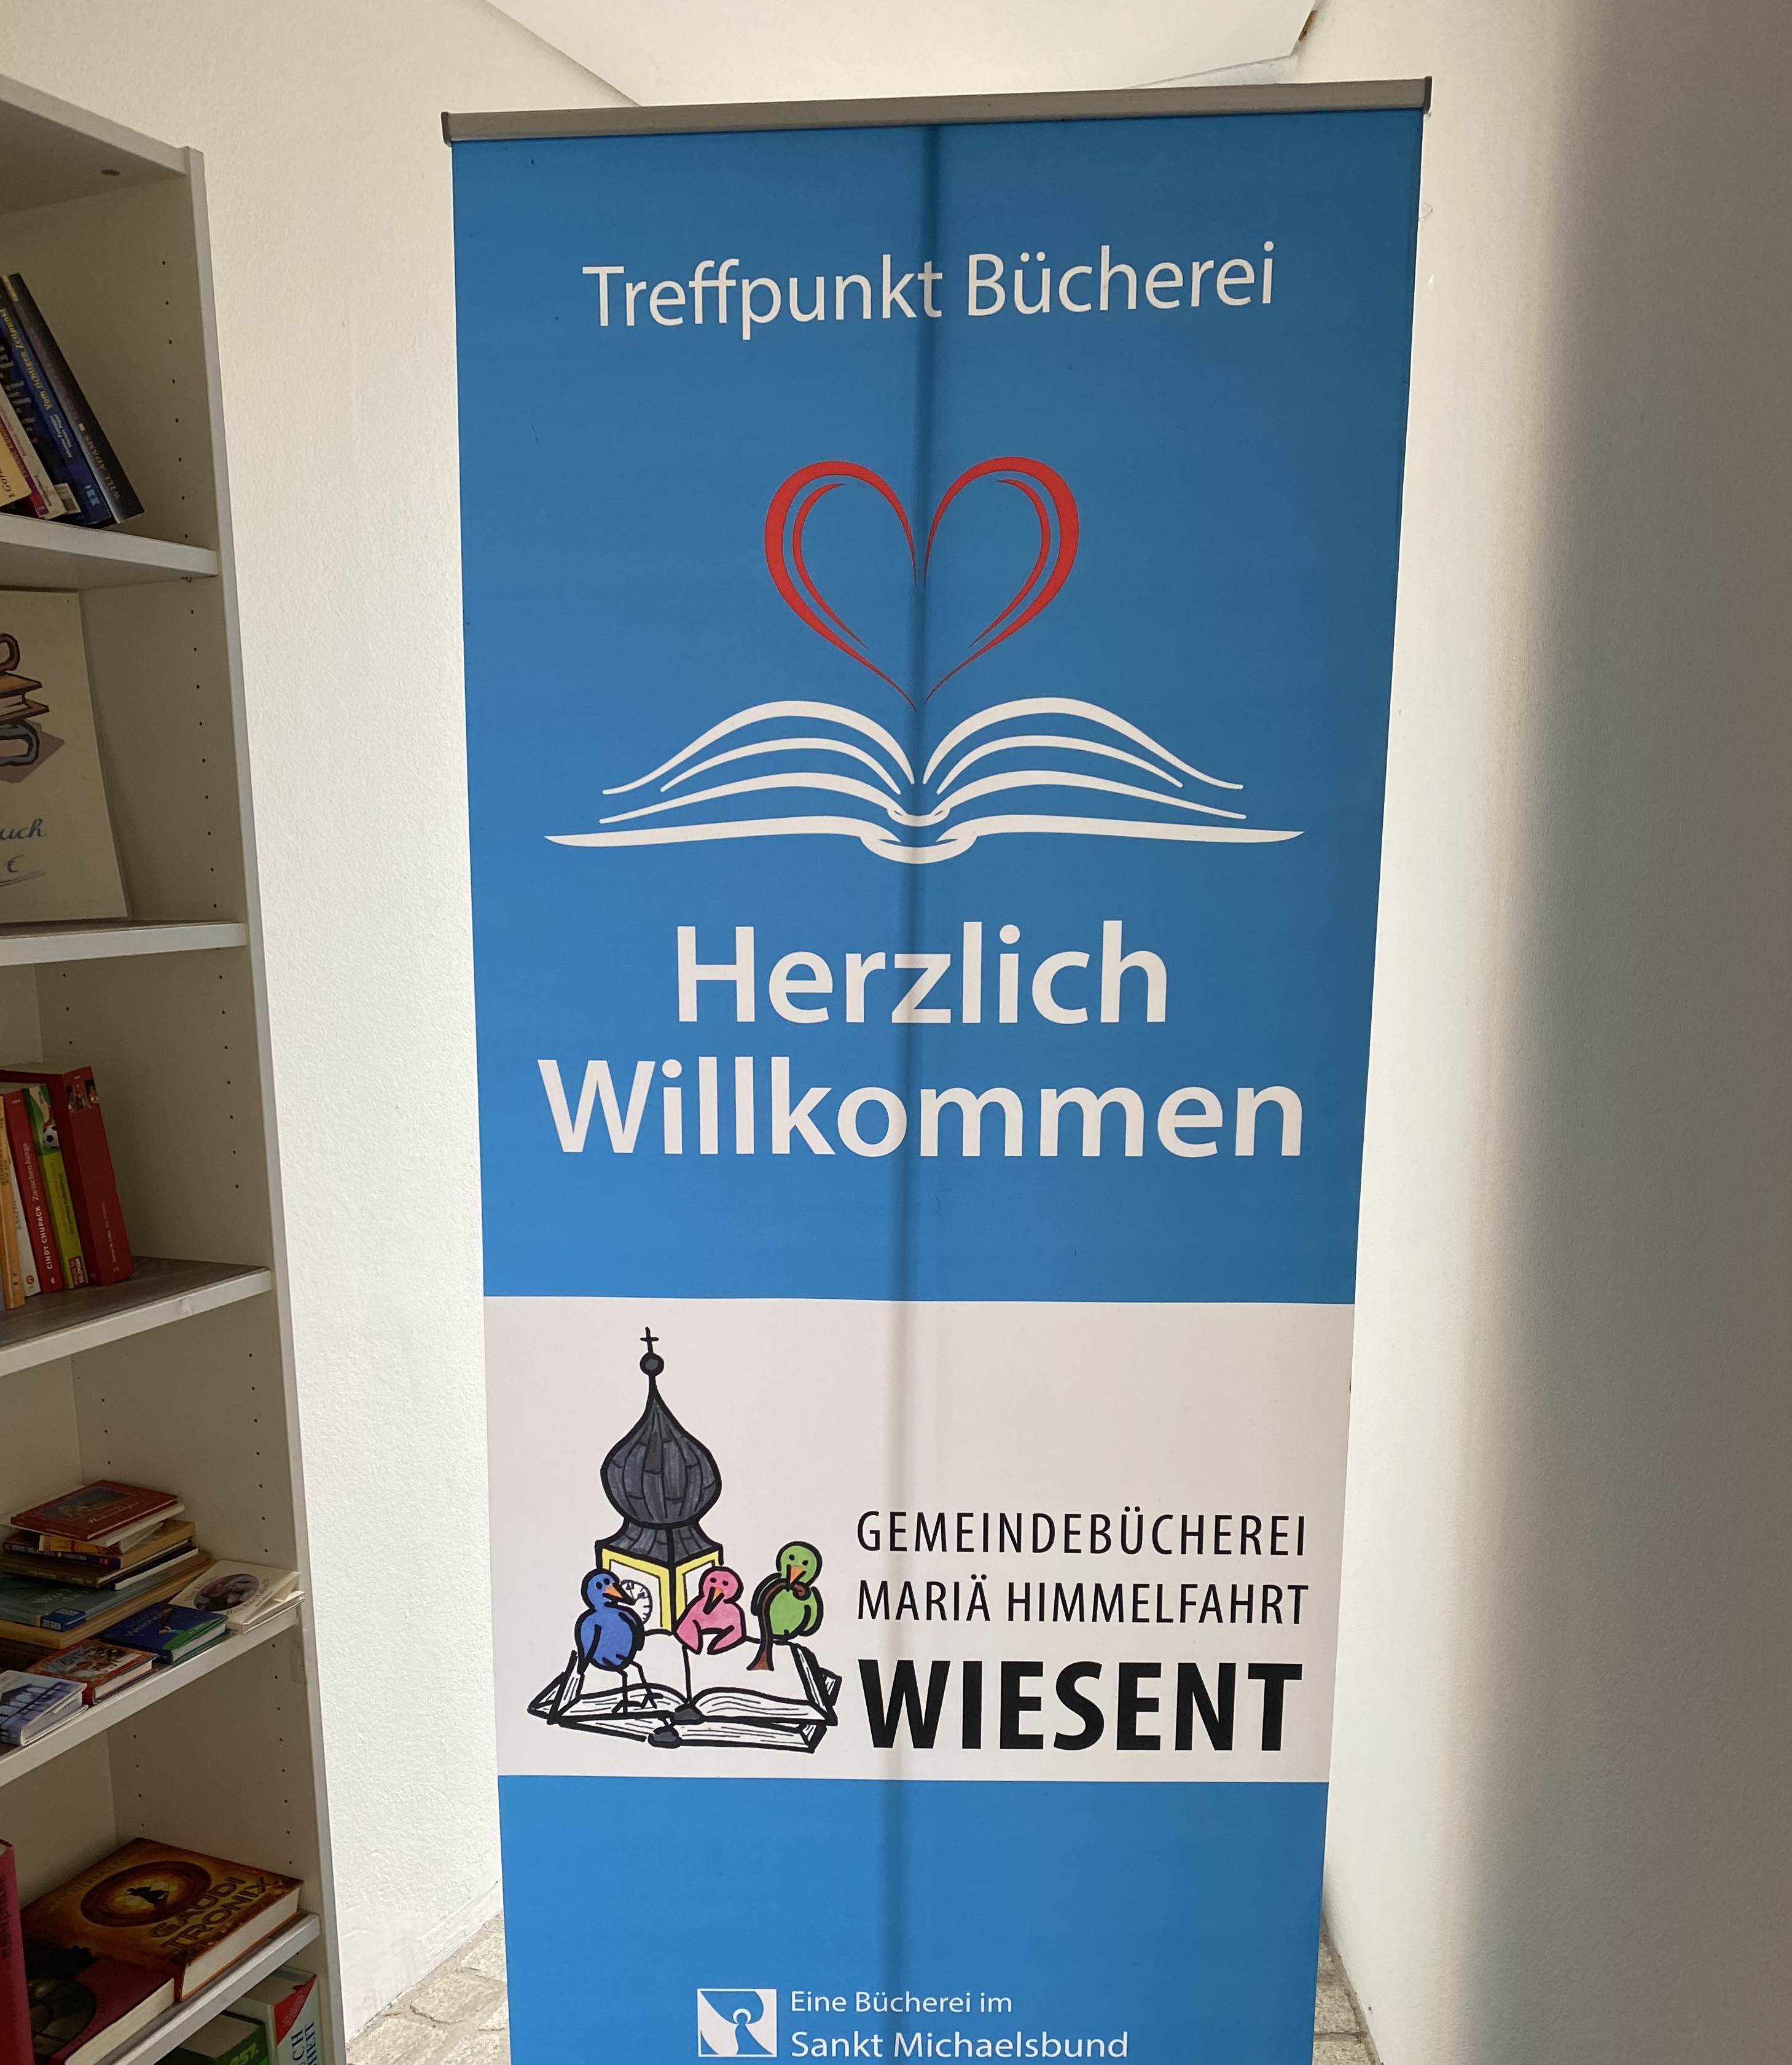 Bücherflohmarkt im Wiesenter Bürgerhaus – Spenden für den guten Zweck 